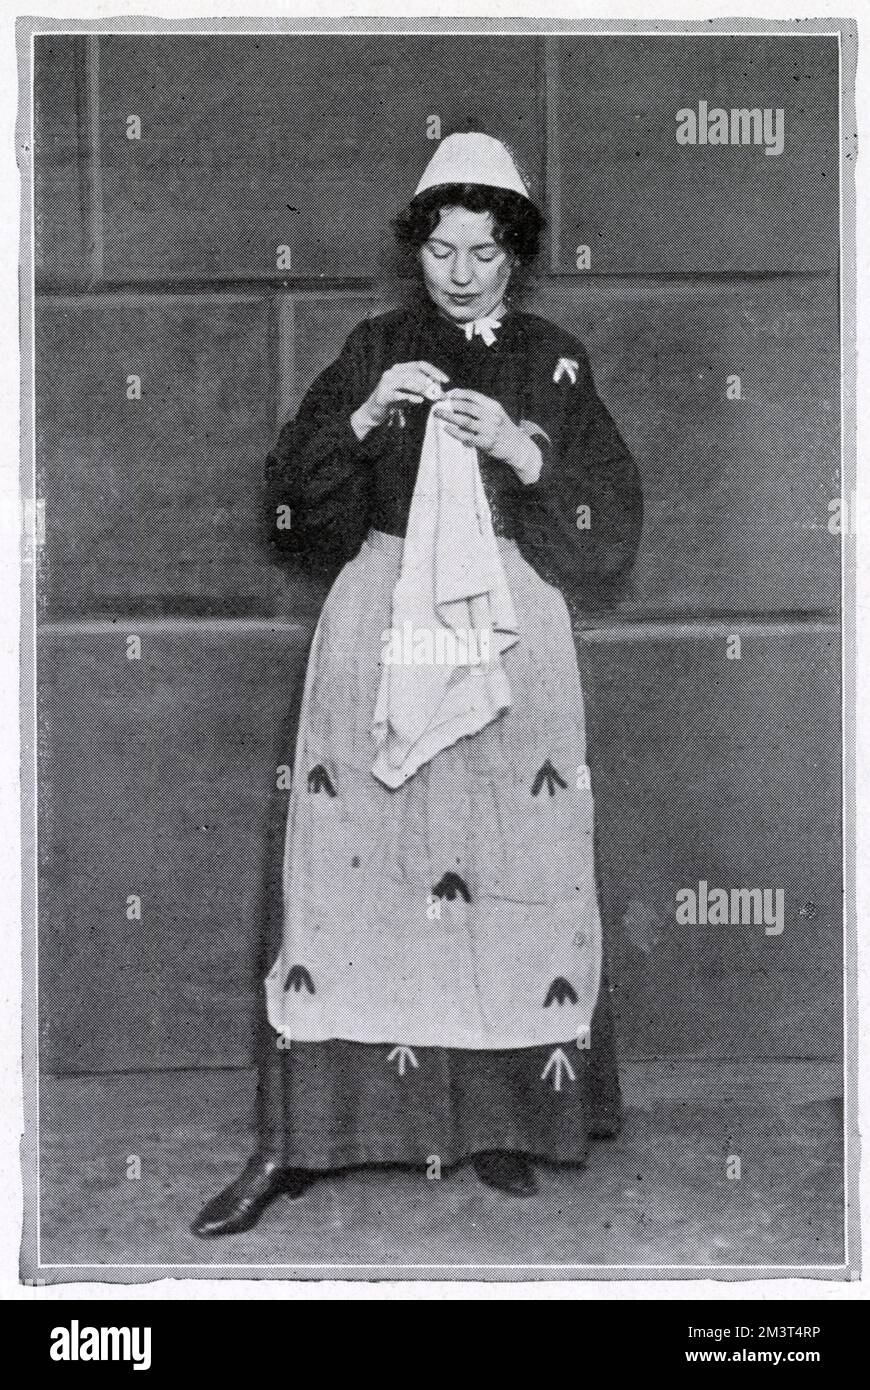 Christabel Pankhurst (1880 - 1958), suffragette britannique, fréquente la prison de Holloway. Photographié portant des vêtements de prison, pris autour de sa libération, annonçant qu'elle avait l'intention de poursuivre la "guerre civile" l'année prochaine. Banque D'Images